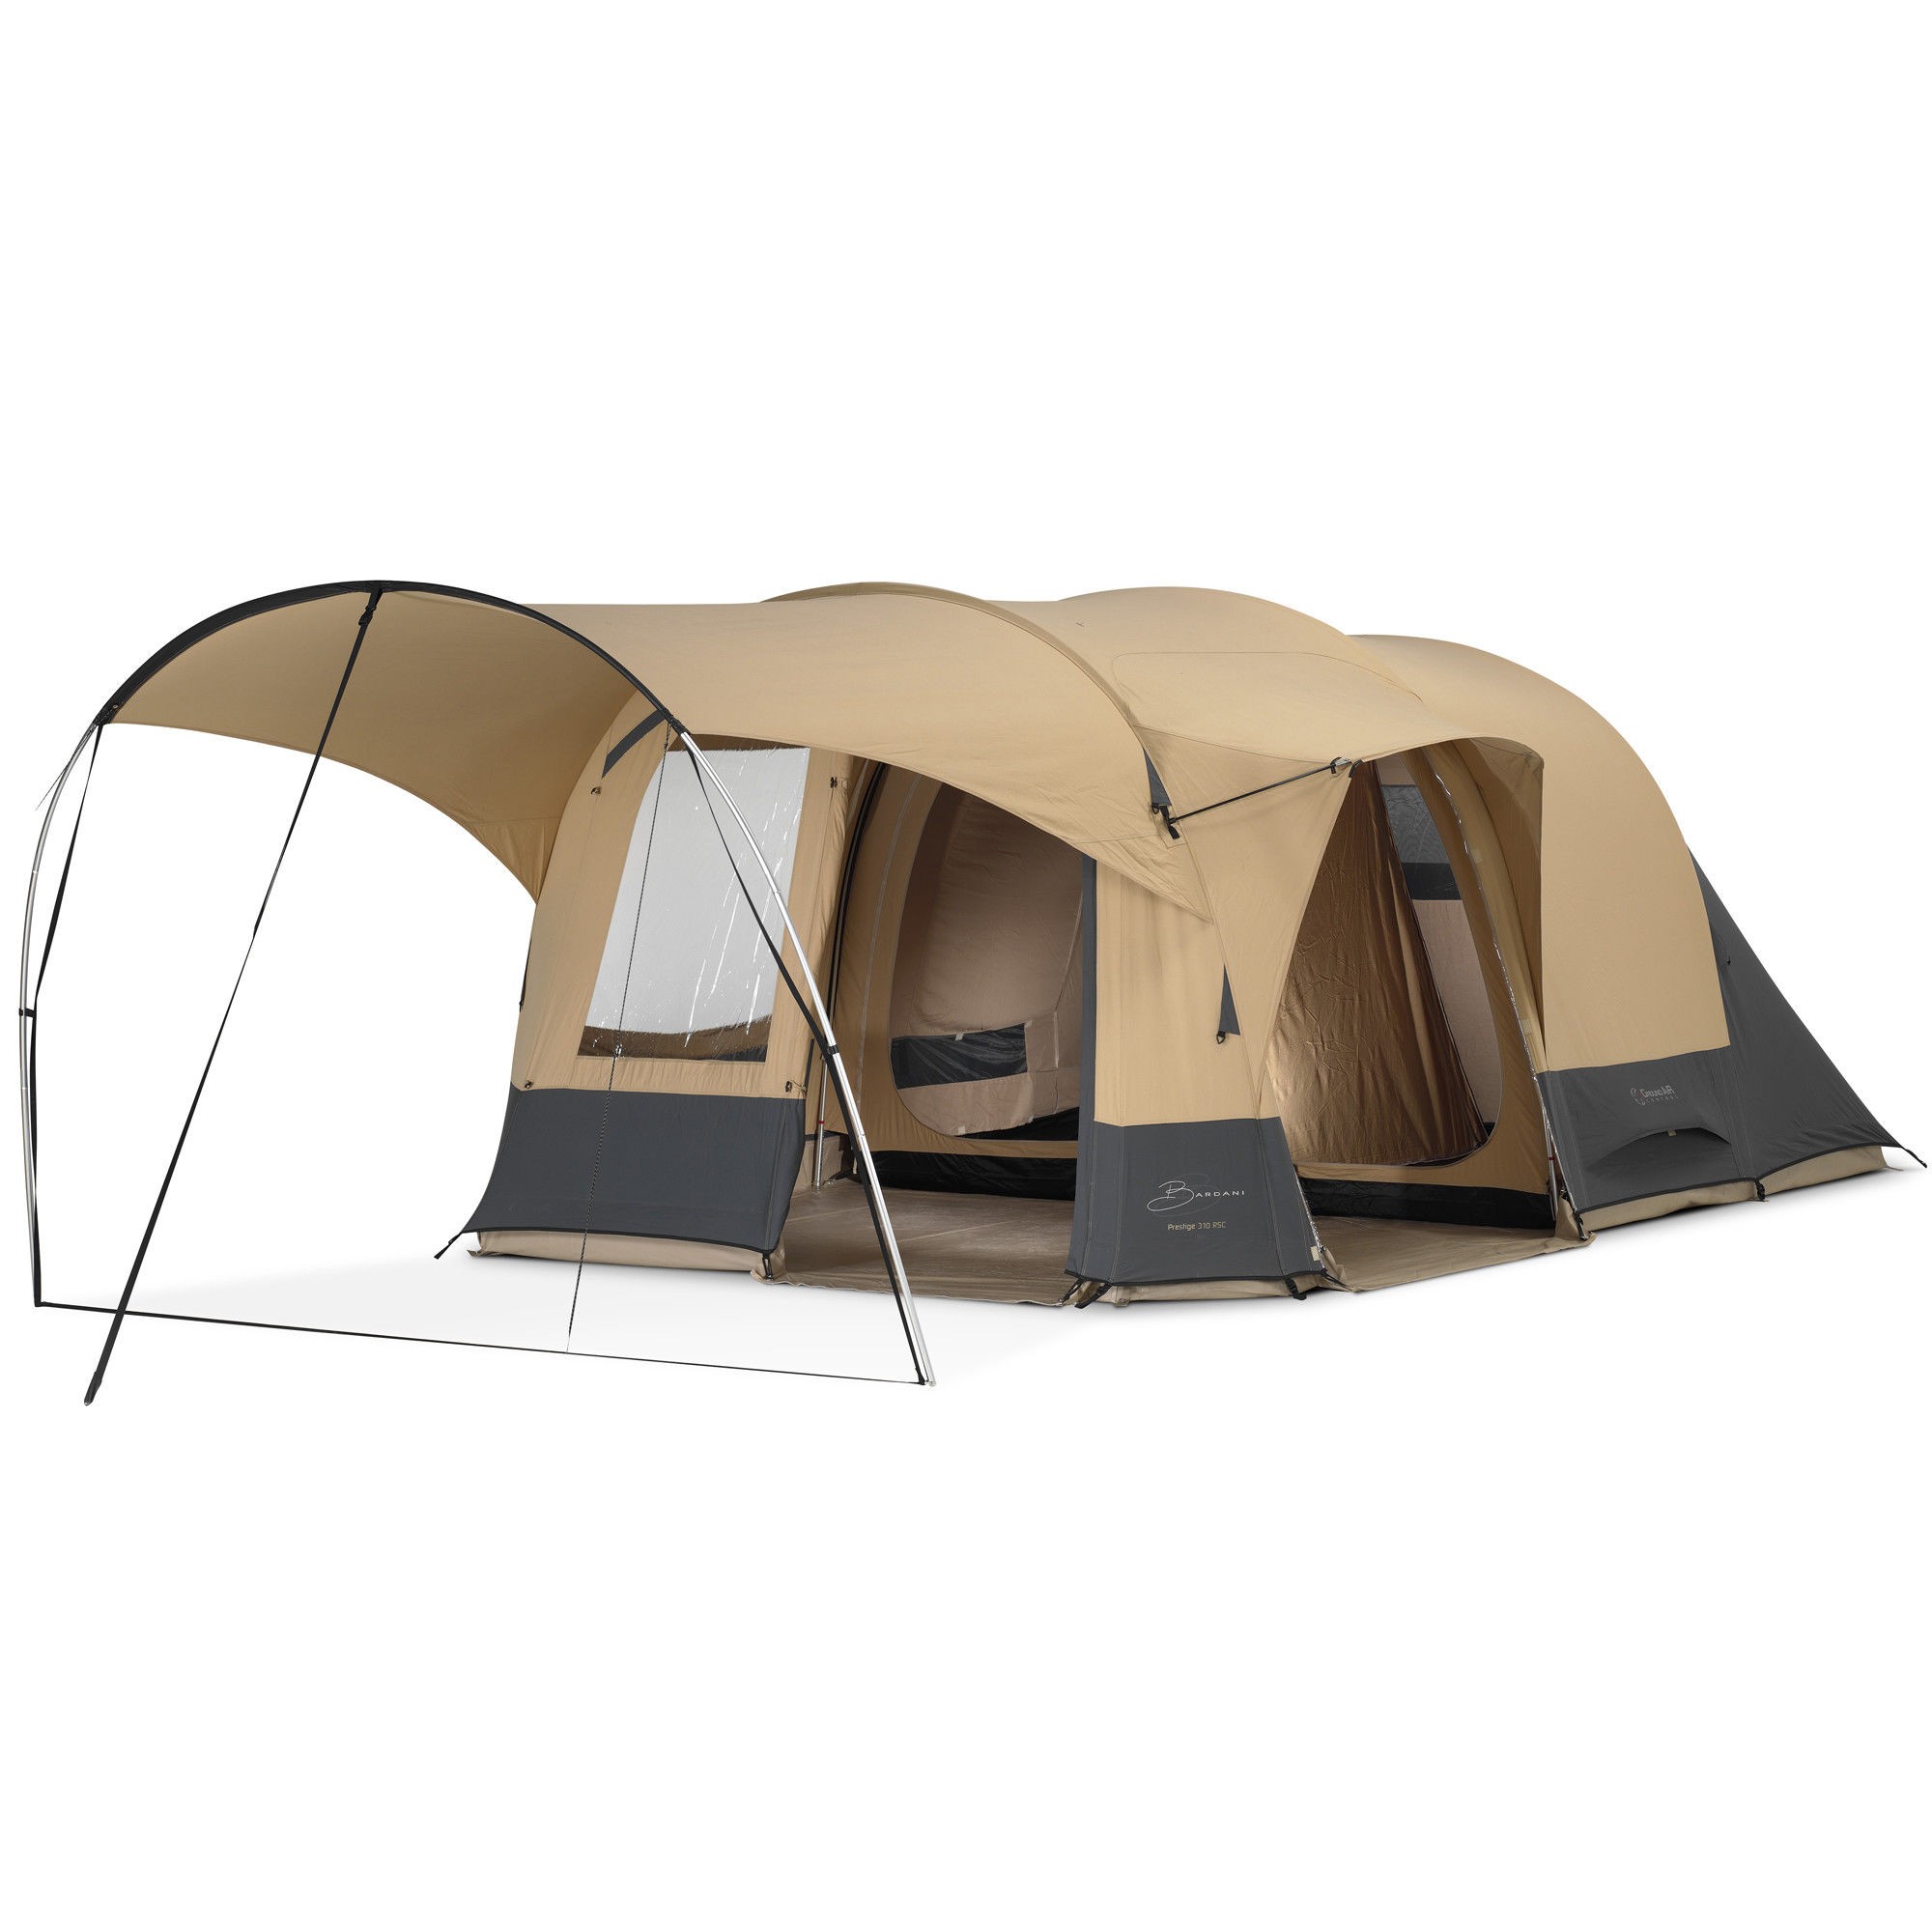 Bardani tenten een kwaliteitsmerk kamperen - KampeerMagazine